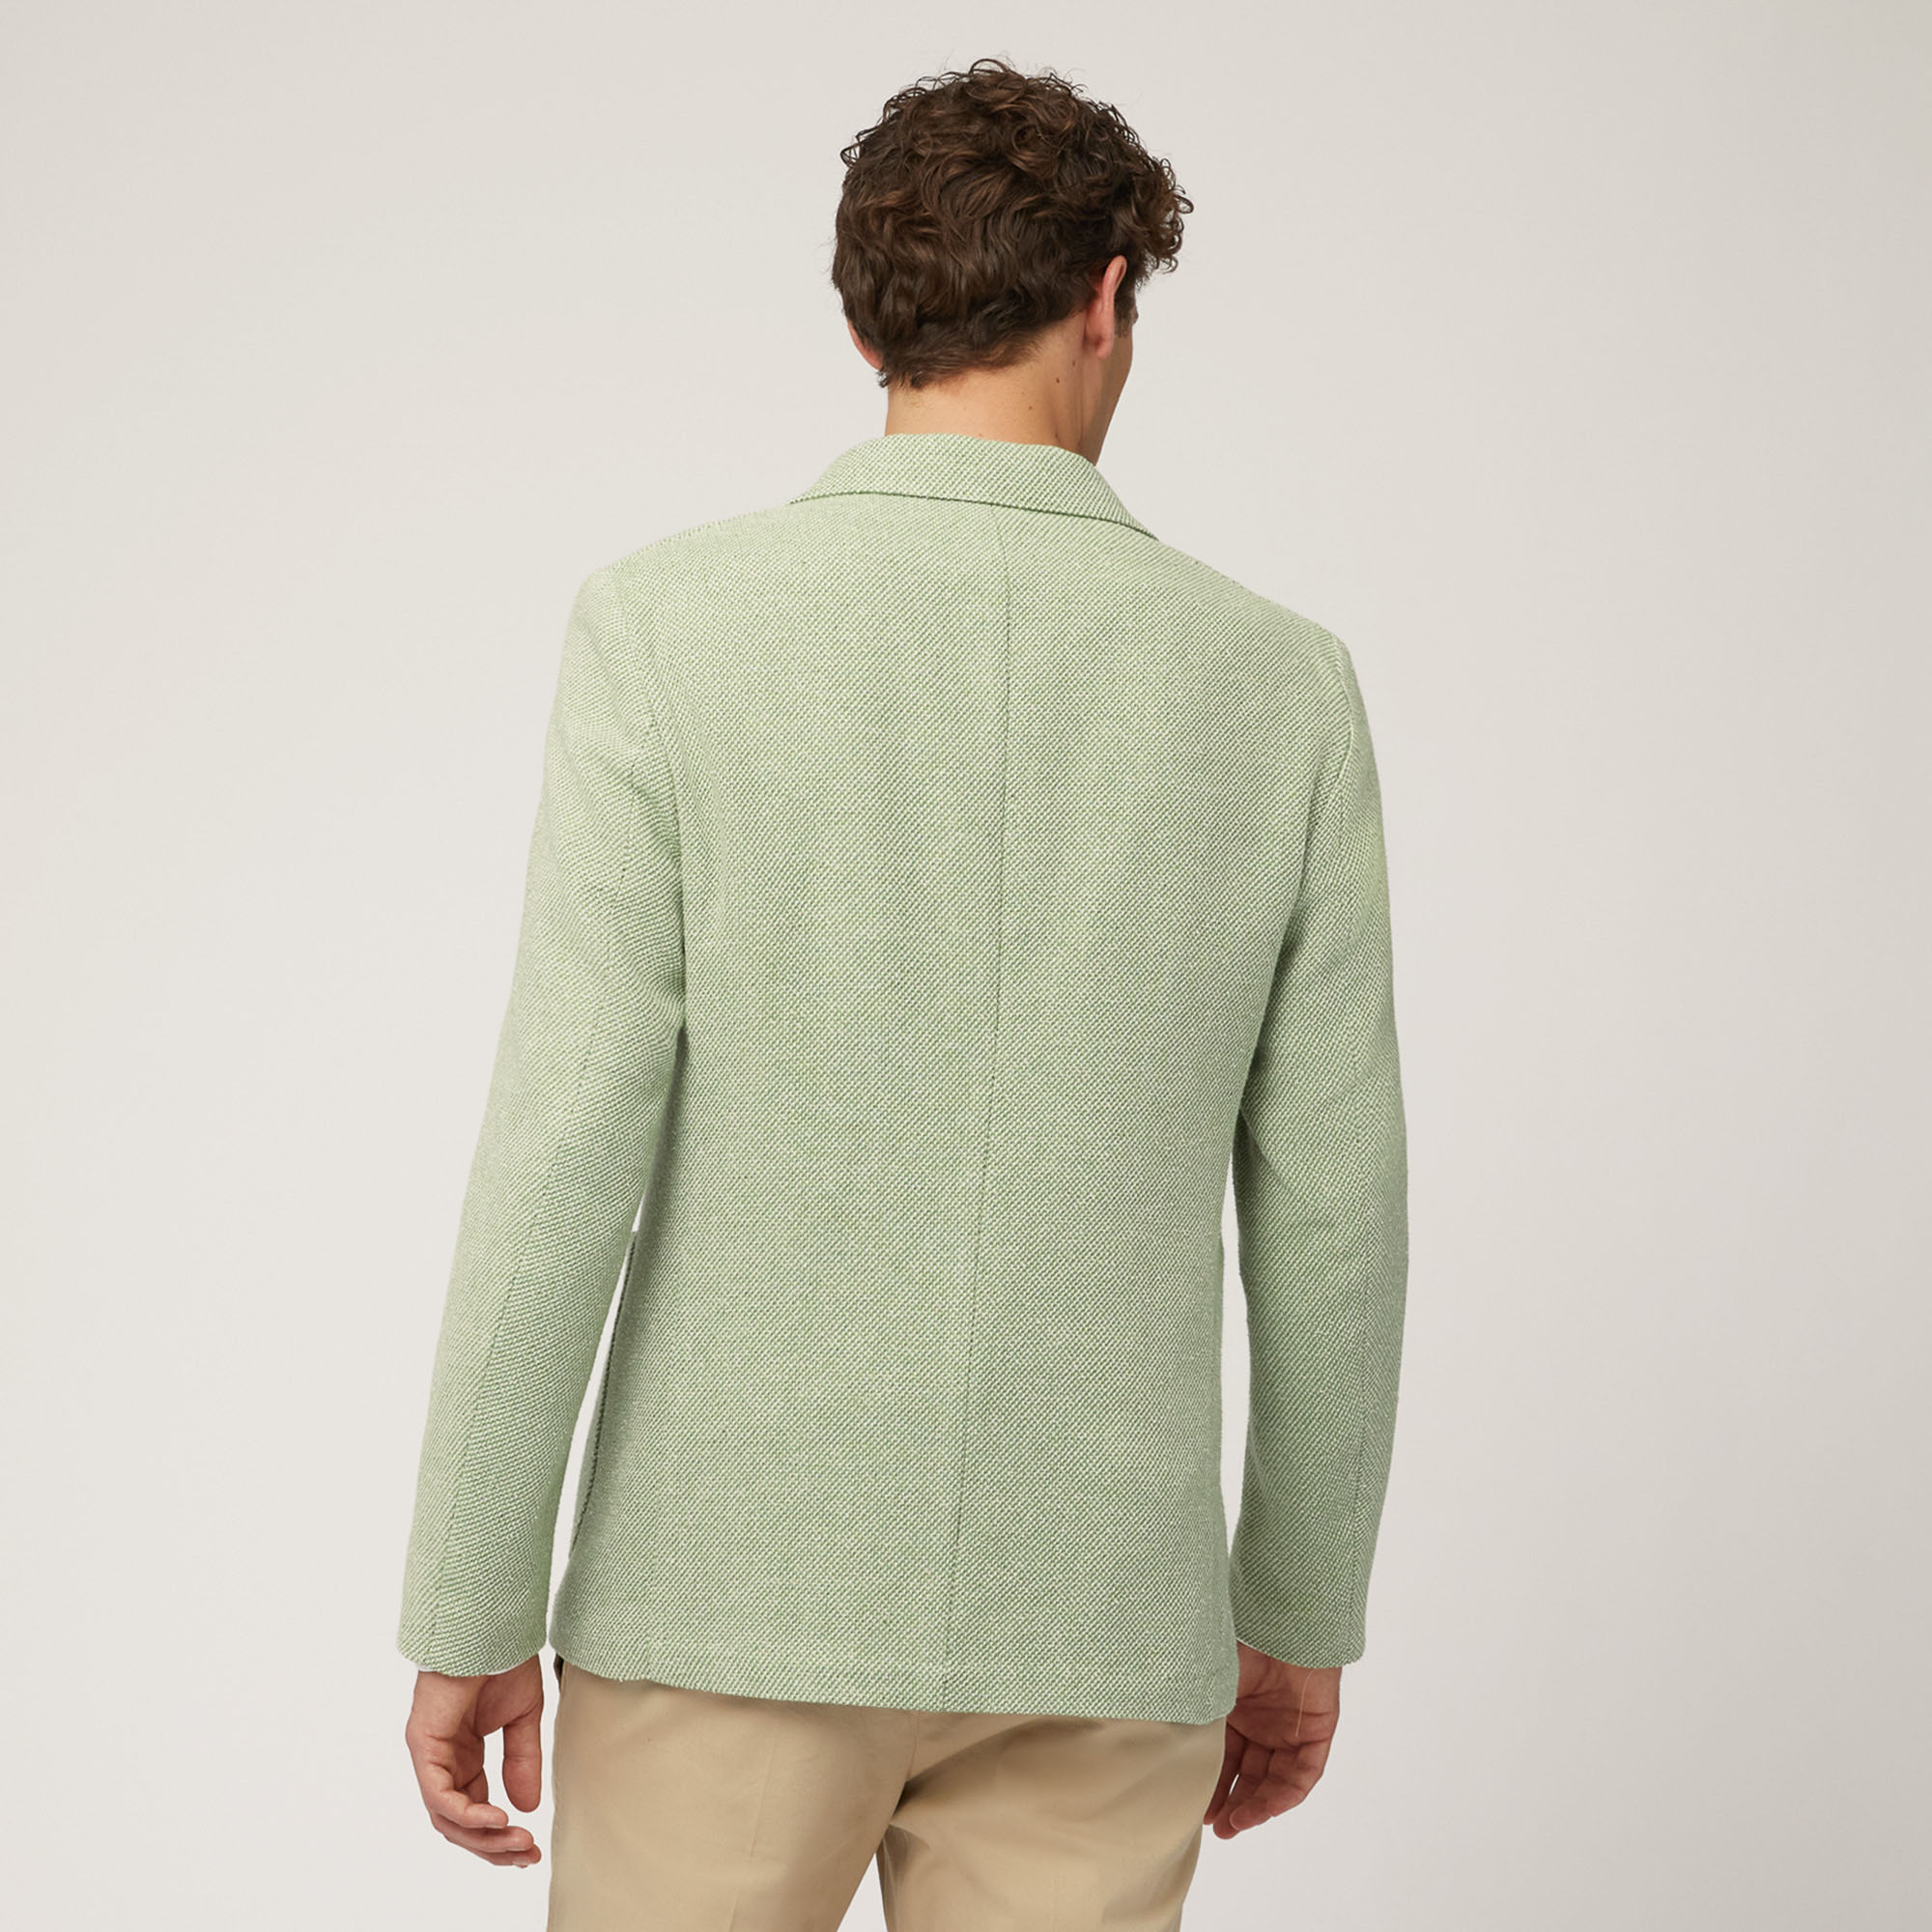 Jacke aus Baumwolle und Leinen mit Taschen und Brusttasche, Grasgrün, large image number 1